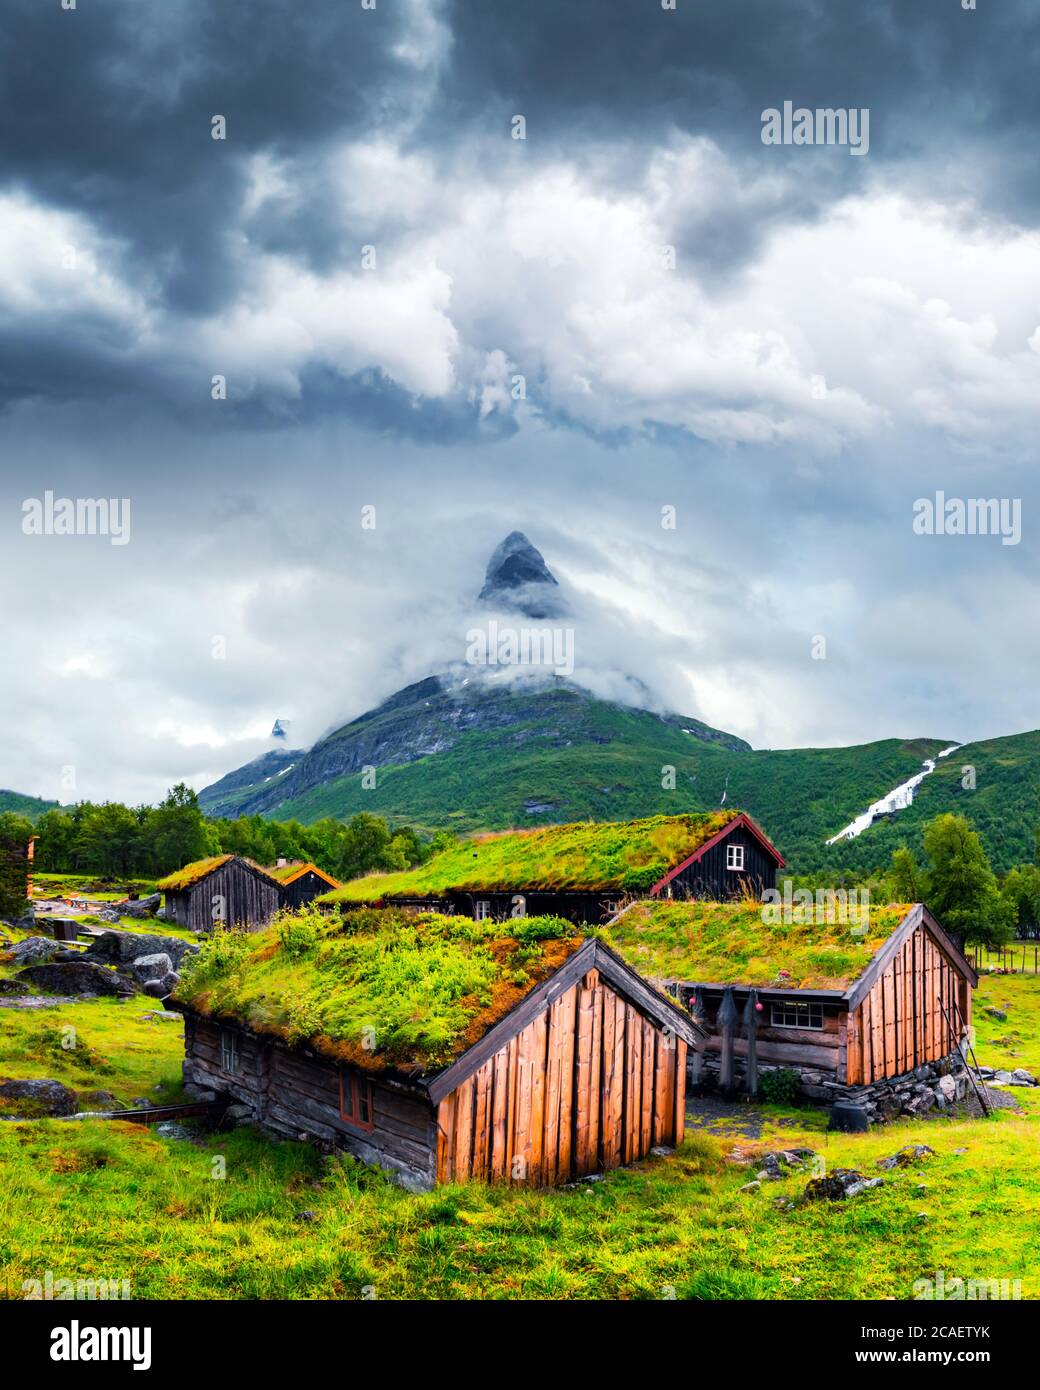 Casas de madera antiguas típicas noruegas con techos de hierba en Innerdalen - el valle de montaña más hermoso de Noruega, cerca del lago Innerdalsvatna. Noruega, Europa. Fotografía de paisajes Foto de stock